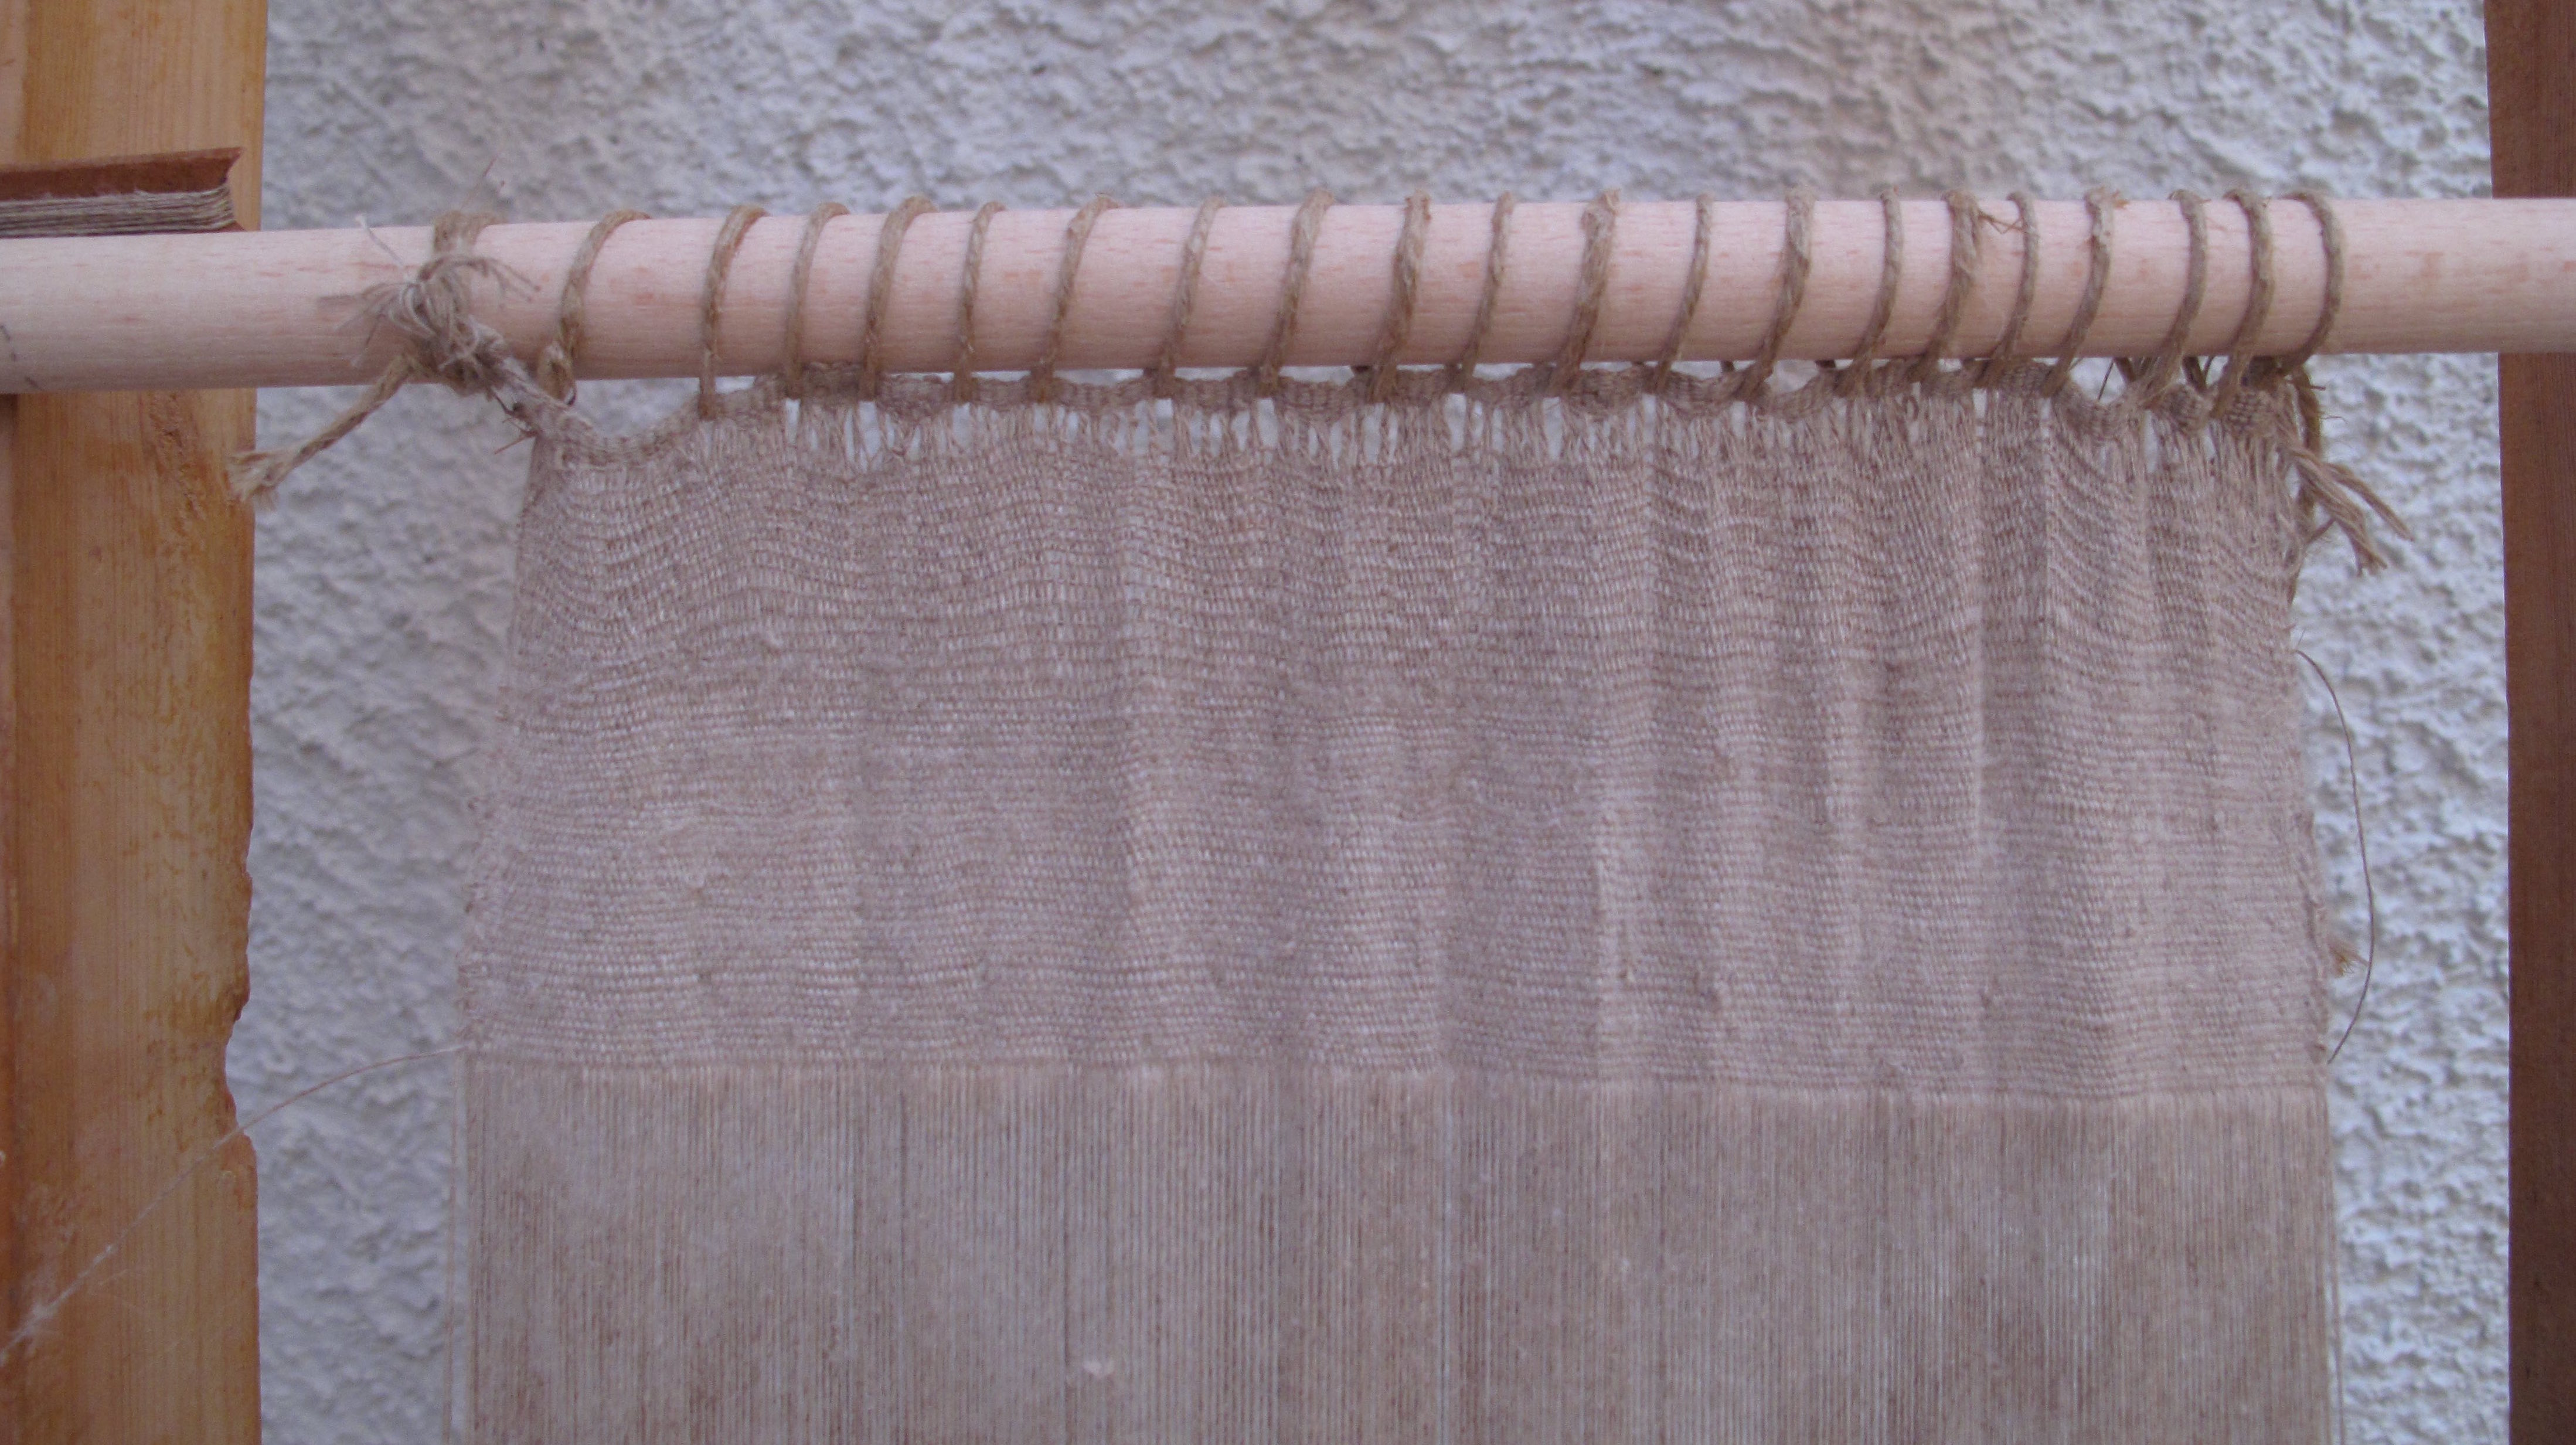 Ανακατασκευή λινού υφάσματος από το Ακρωτήρι στον όρθιο αργαλειό με βάρη. Σ. Σπαντιδάκη.